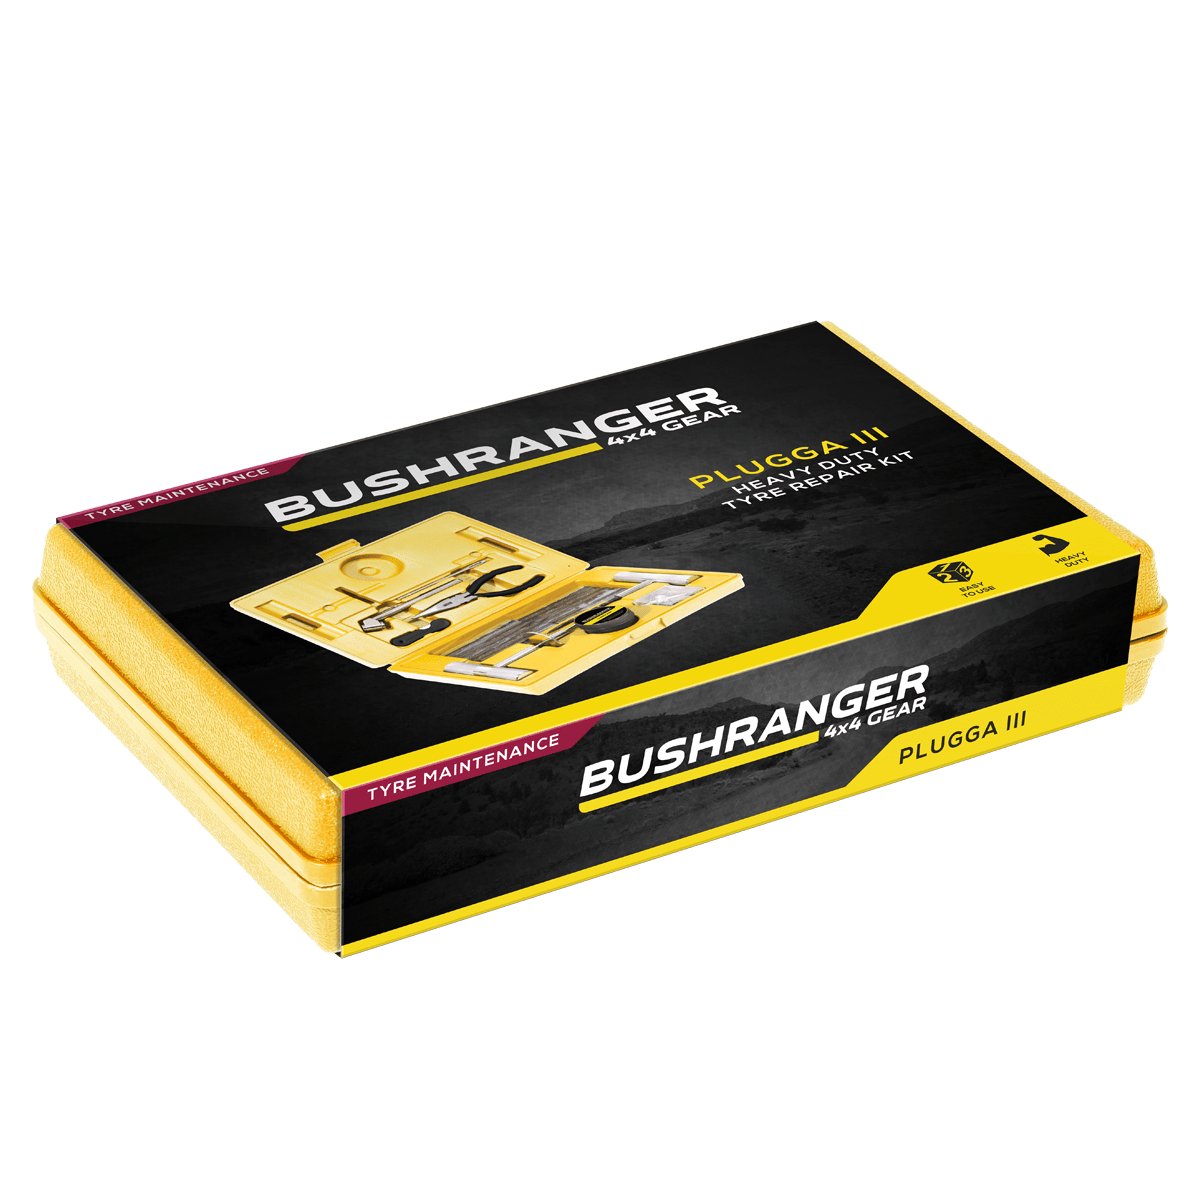 Bushranger Plugga III Tyre Repair Kit | Bushranger 4x4 | A247 Gear